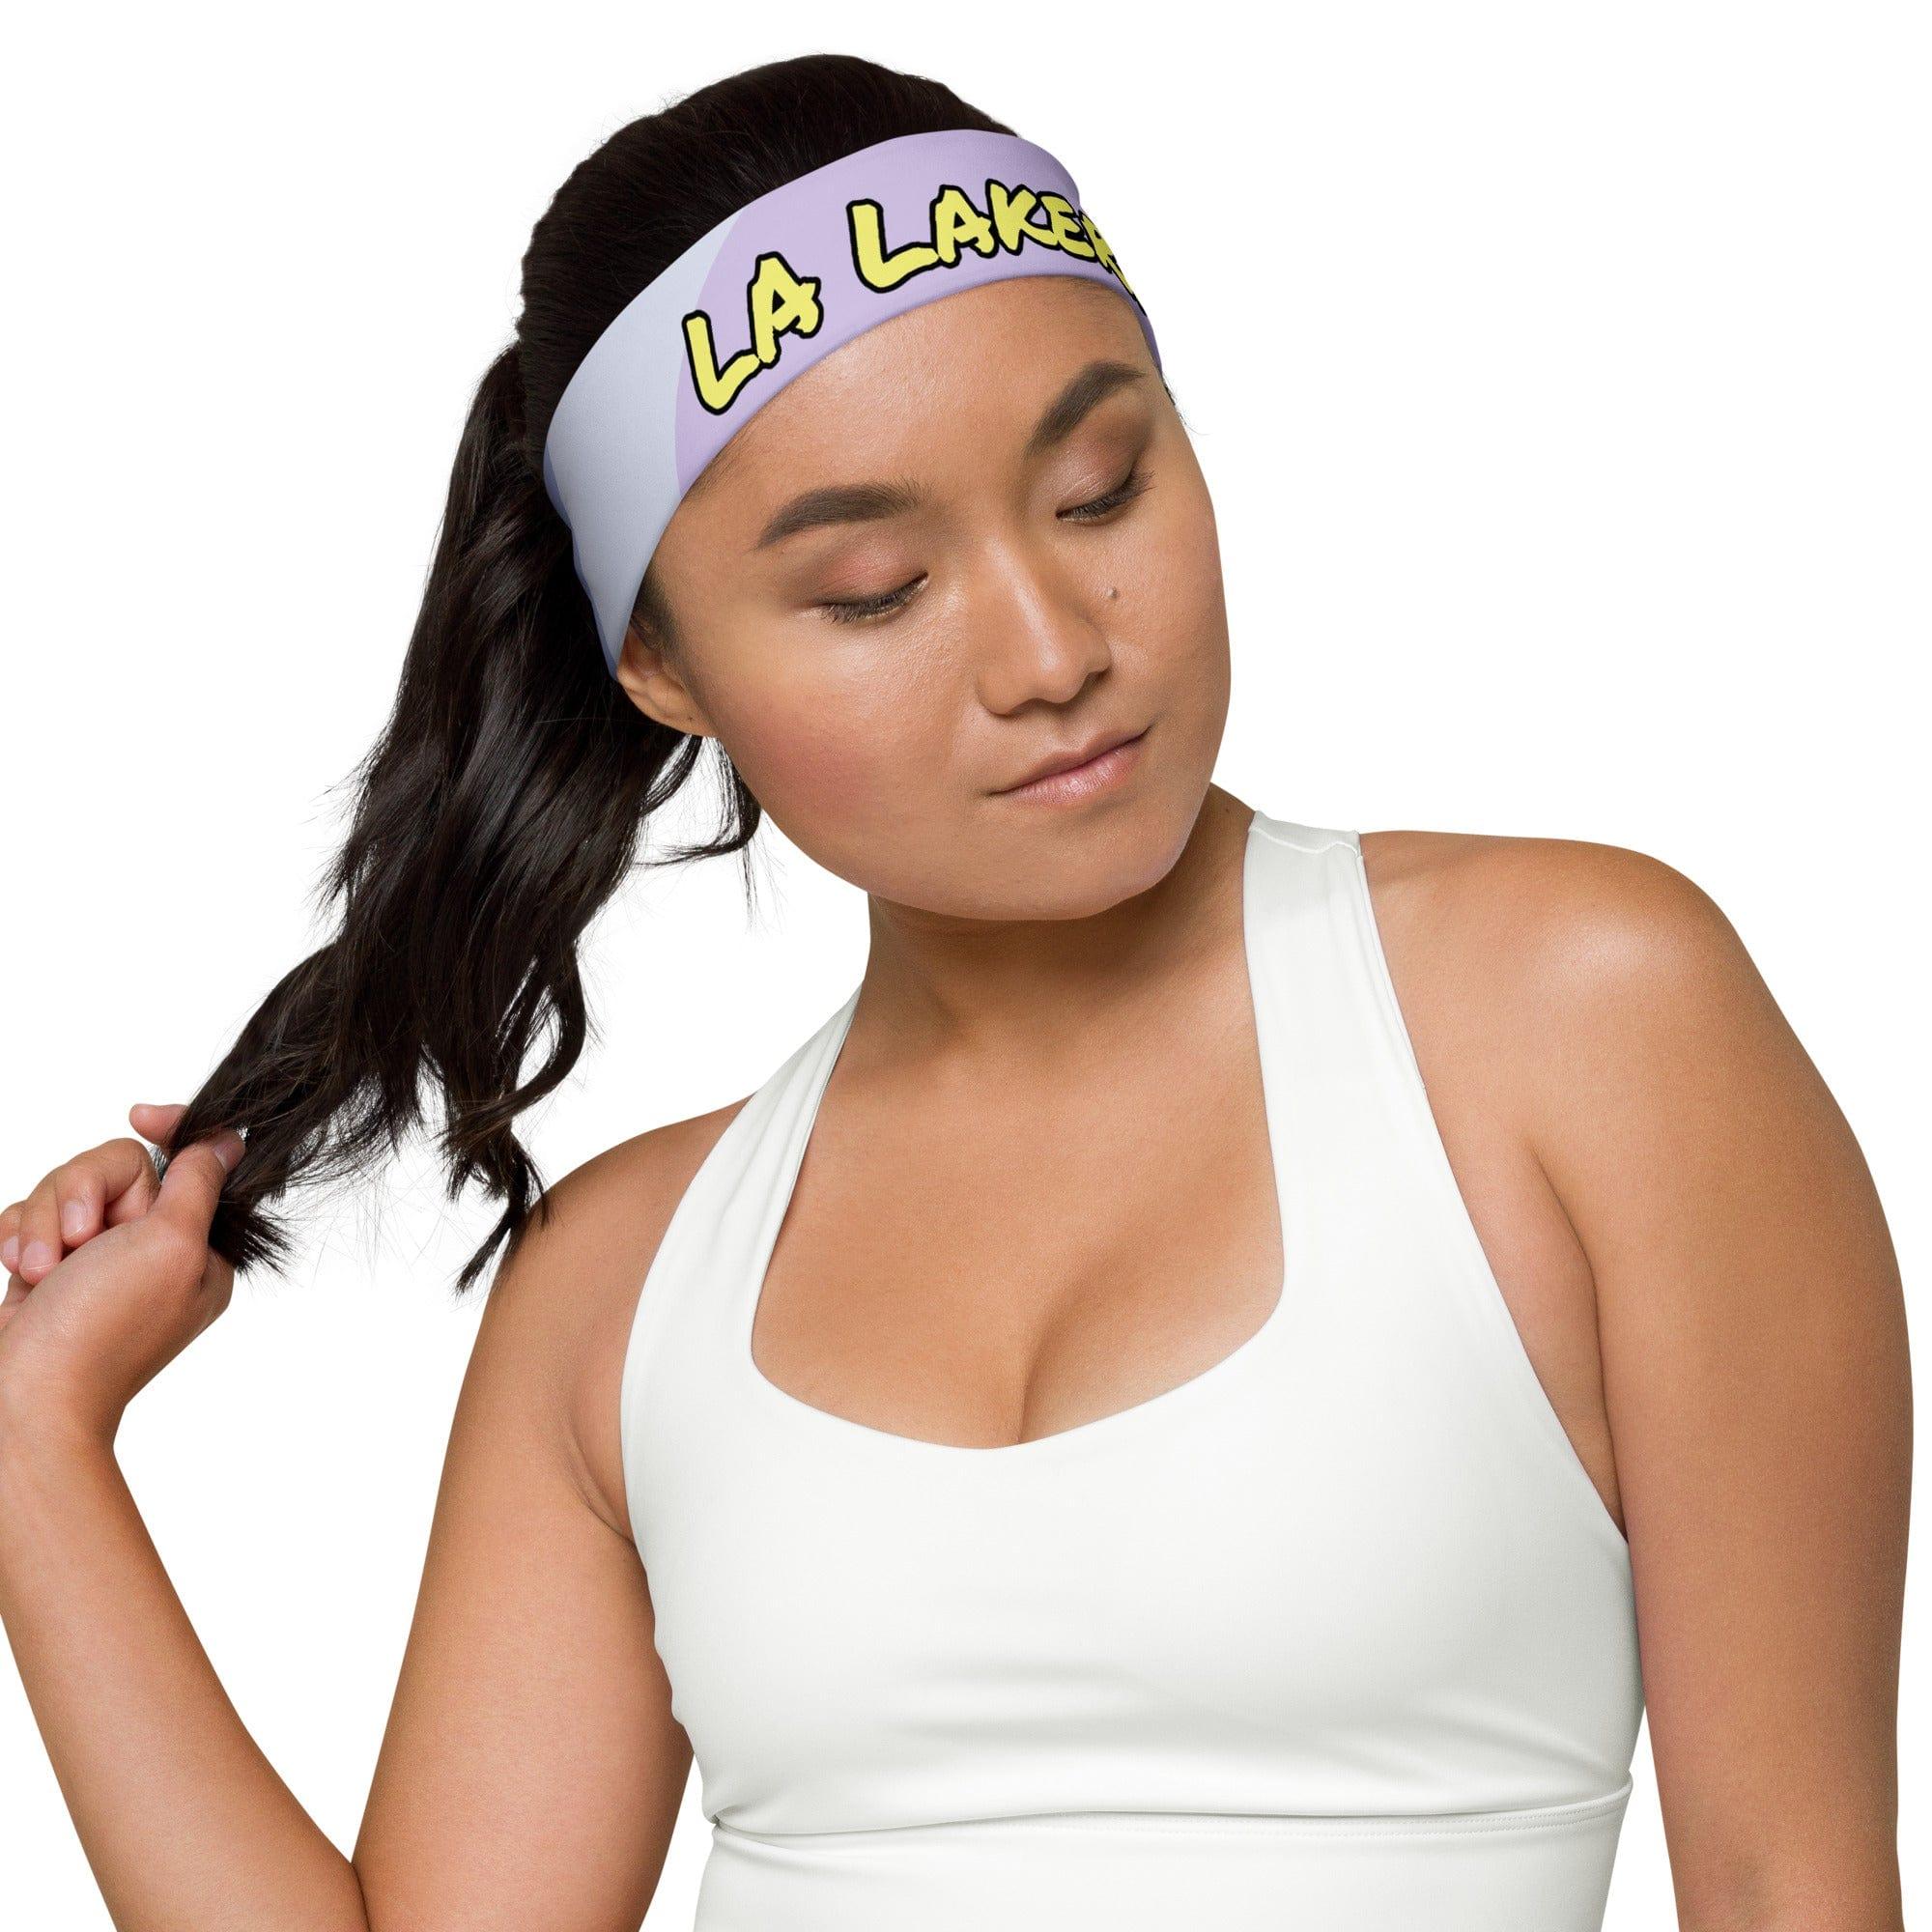 LA Lakers Headband in Purple Camo Quick Dry Sports Head Tie - TopKoalaTee